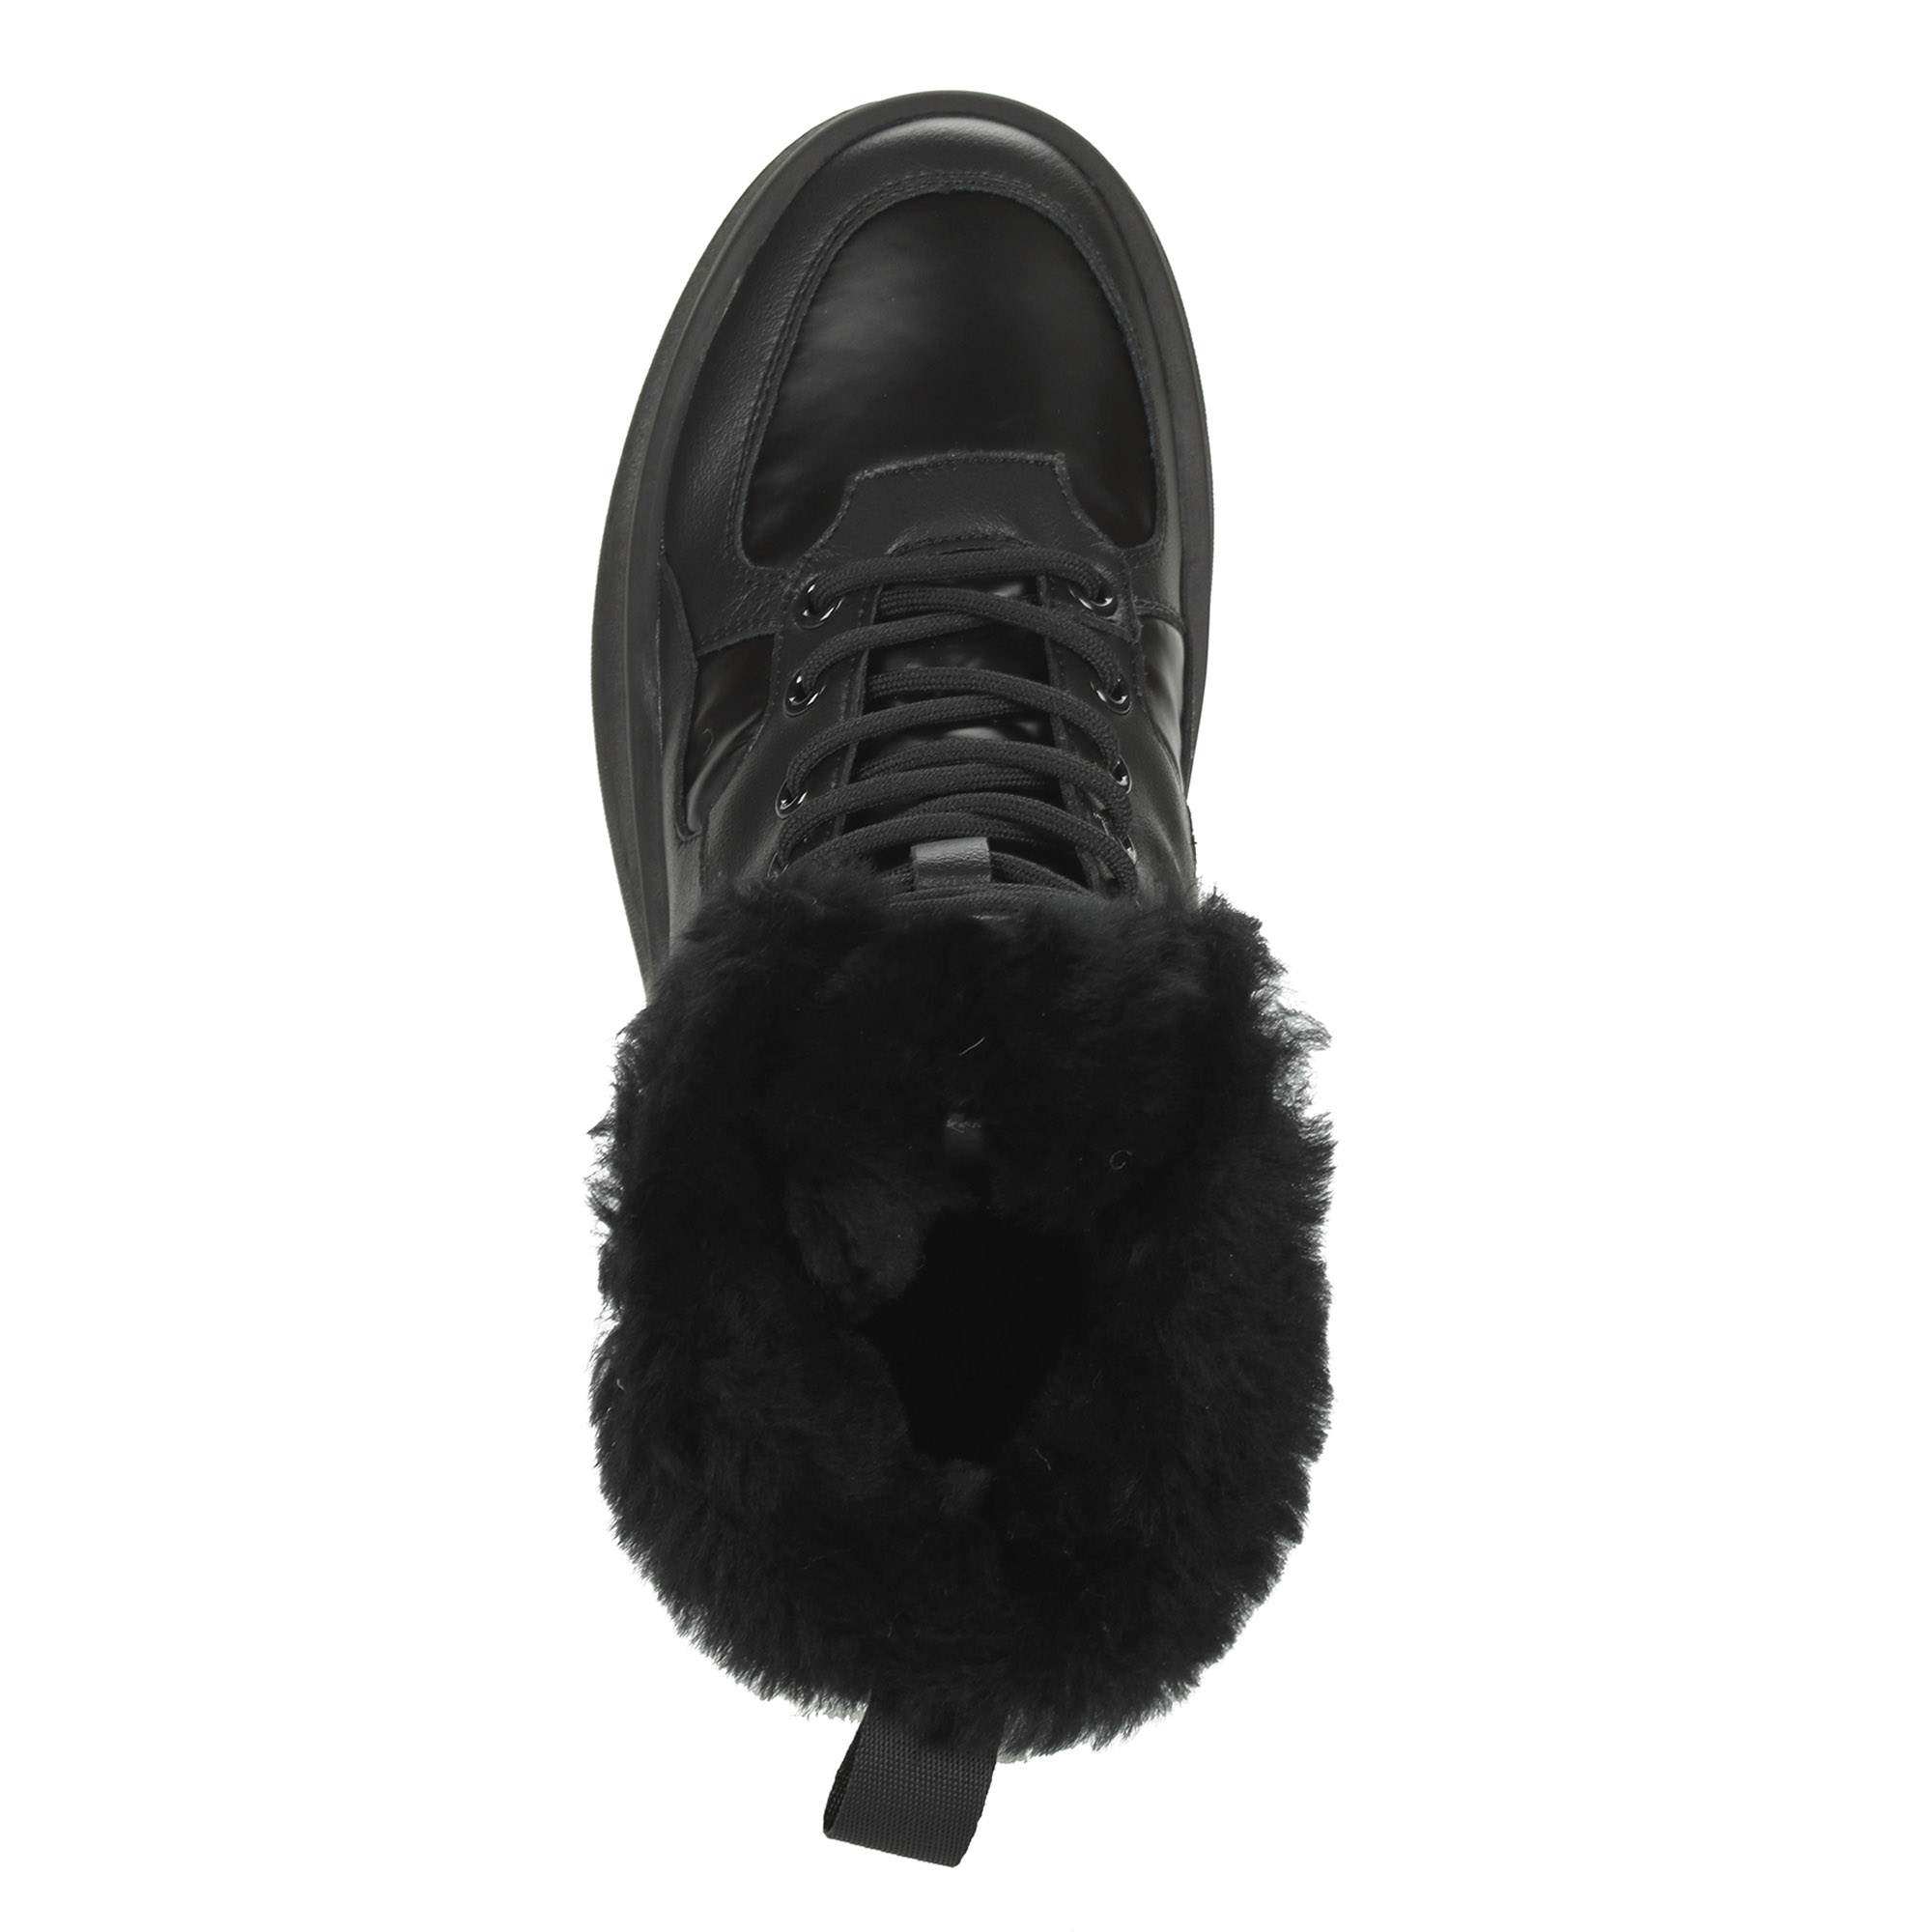 Черные высокие кроссовки из комбинированных материалов смеховой опушкой на подкладке из натуральной шерсти на утолщенной платформе Respect, размер 36, цвет черный - фото 7